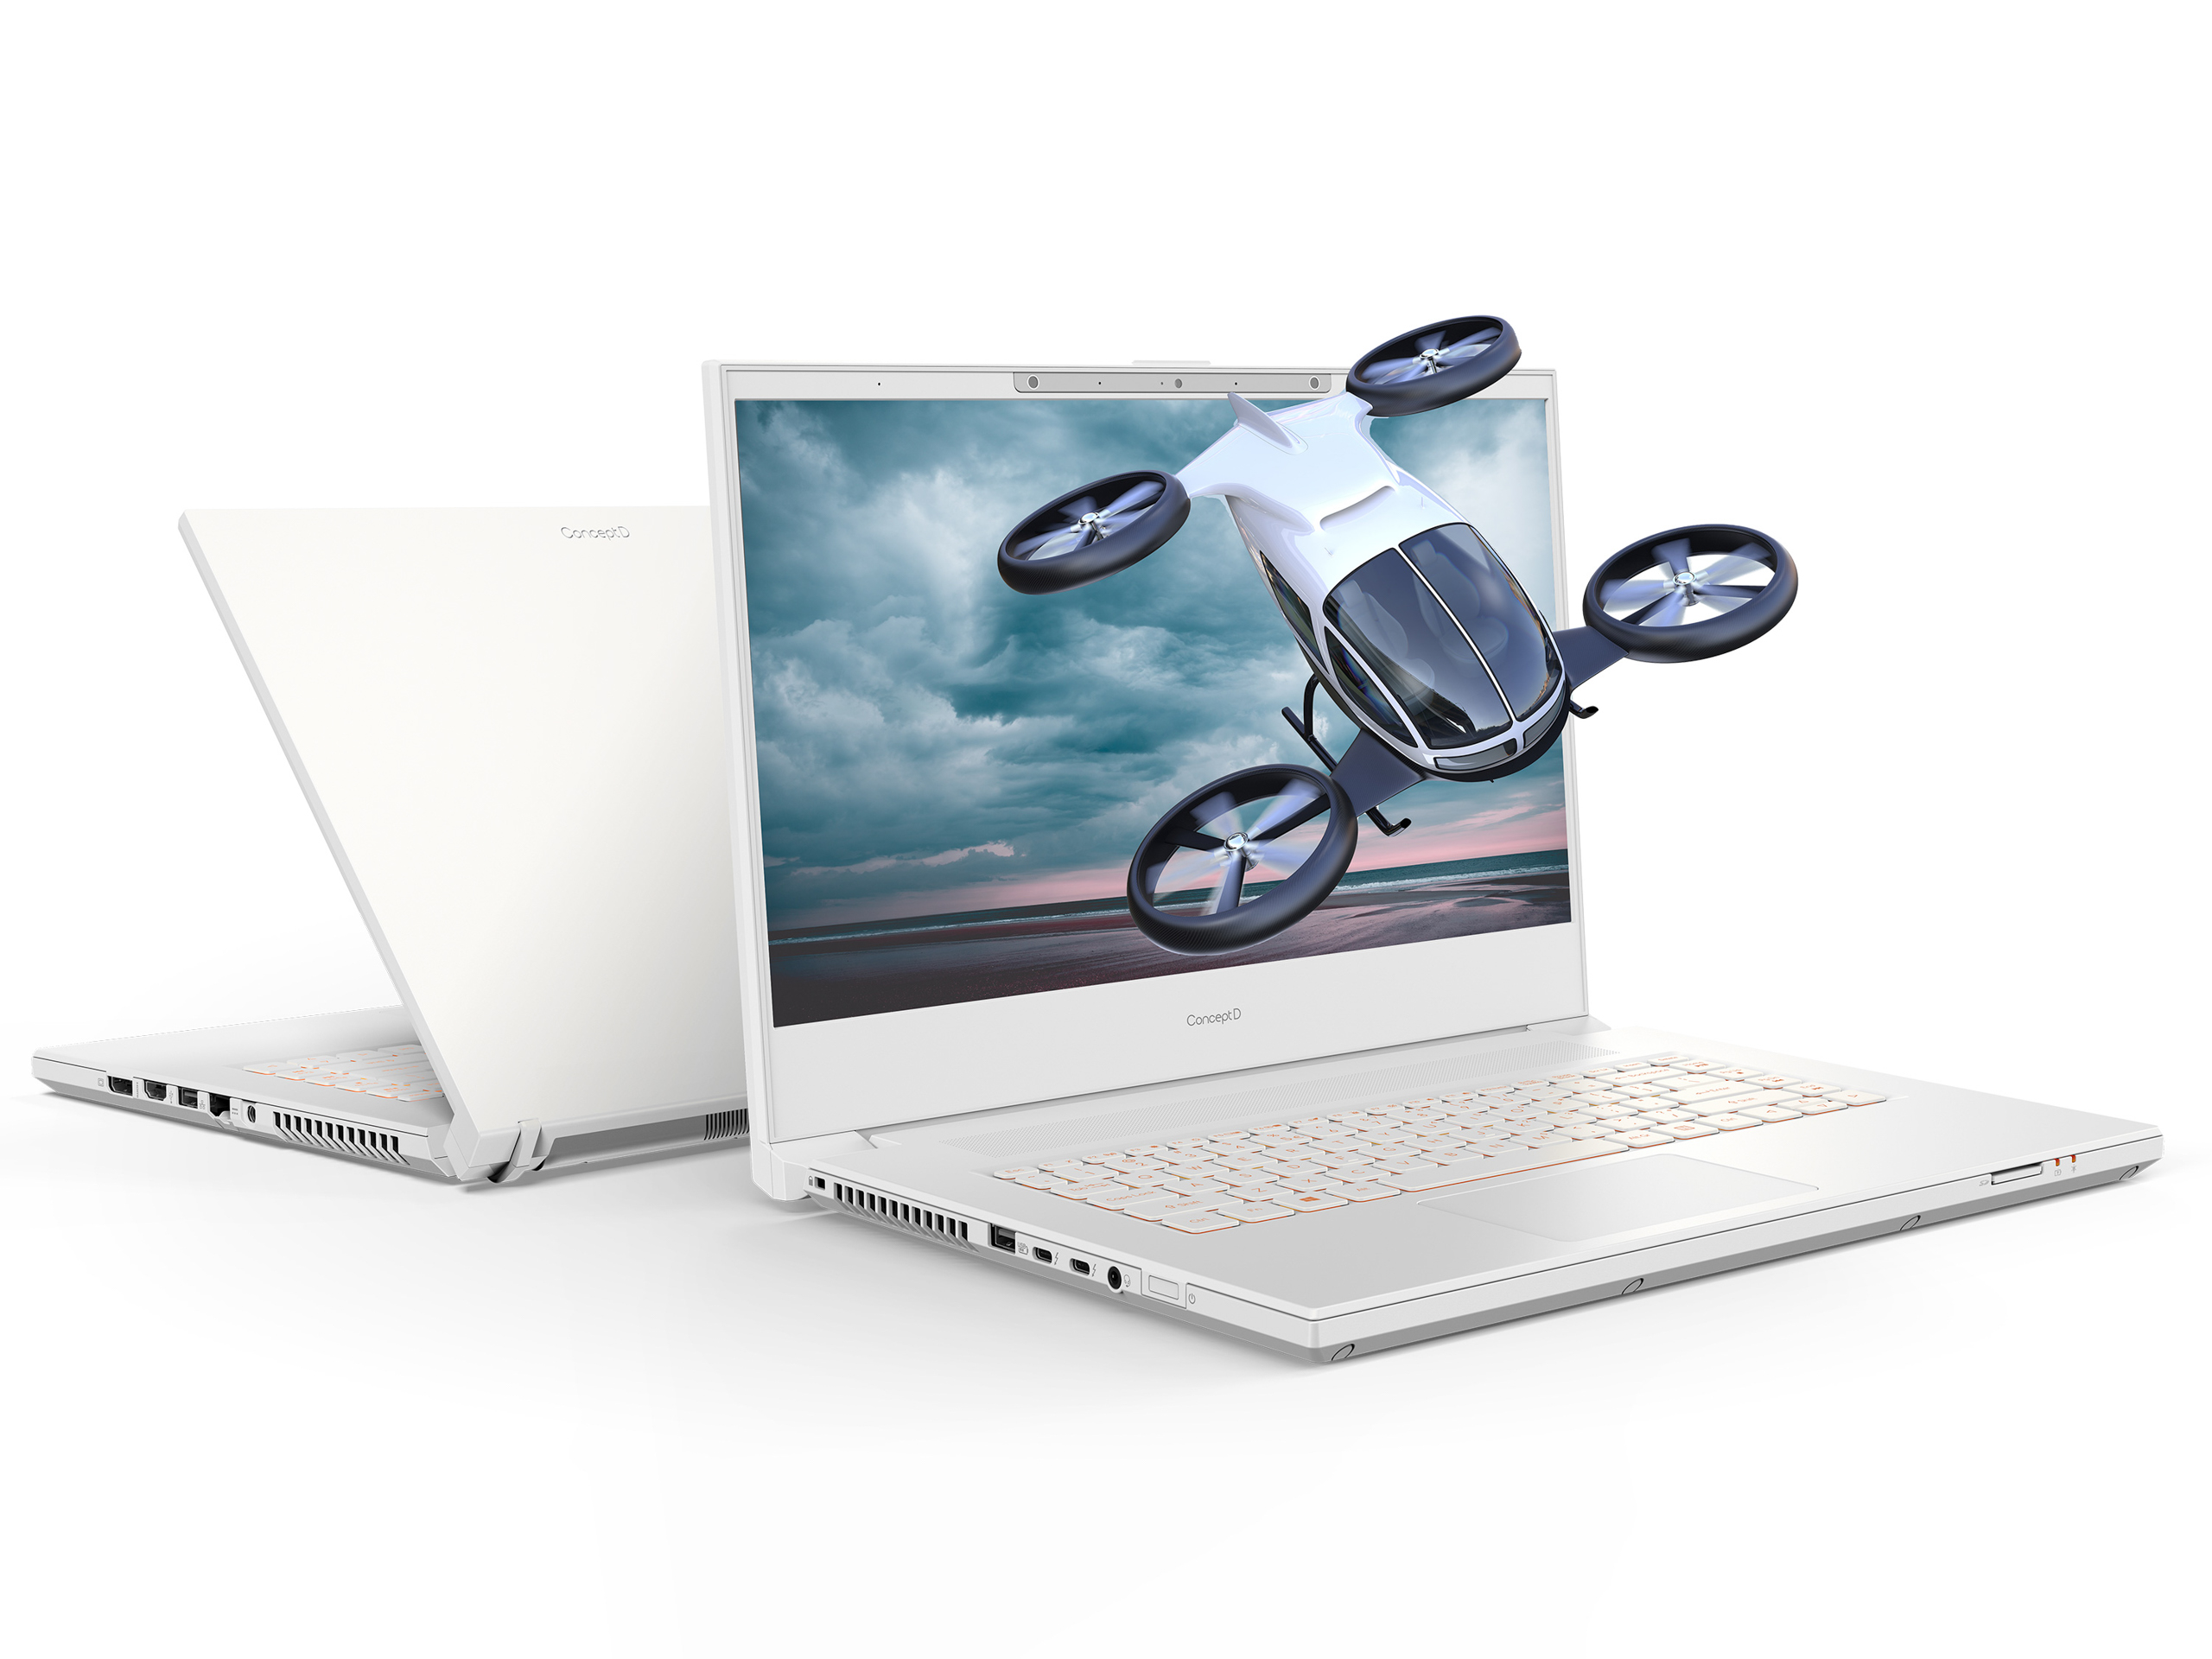 Acer giới thiệu laptop ConceptD 7 phiên bản SpatialLabs dành cho người sáng tạo đồ họa 3D